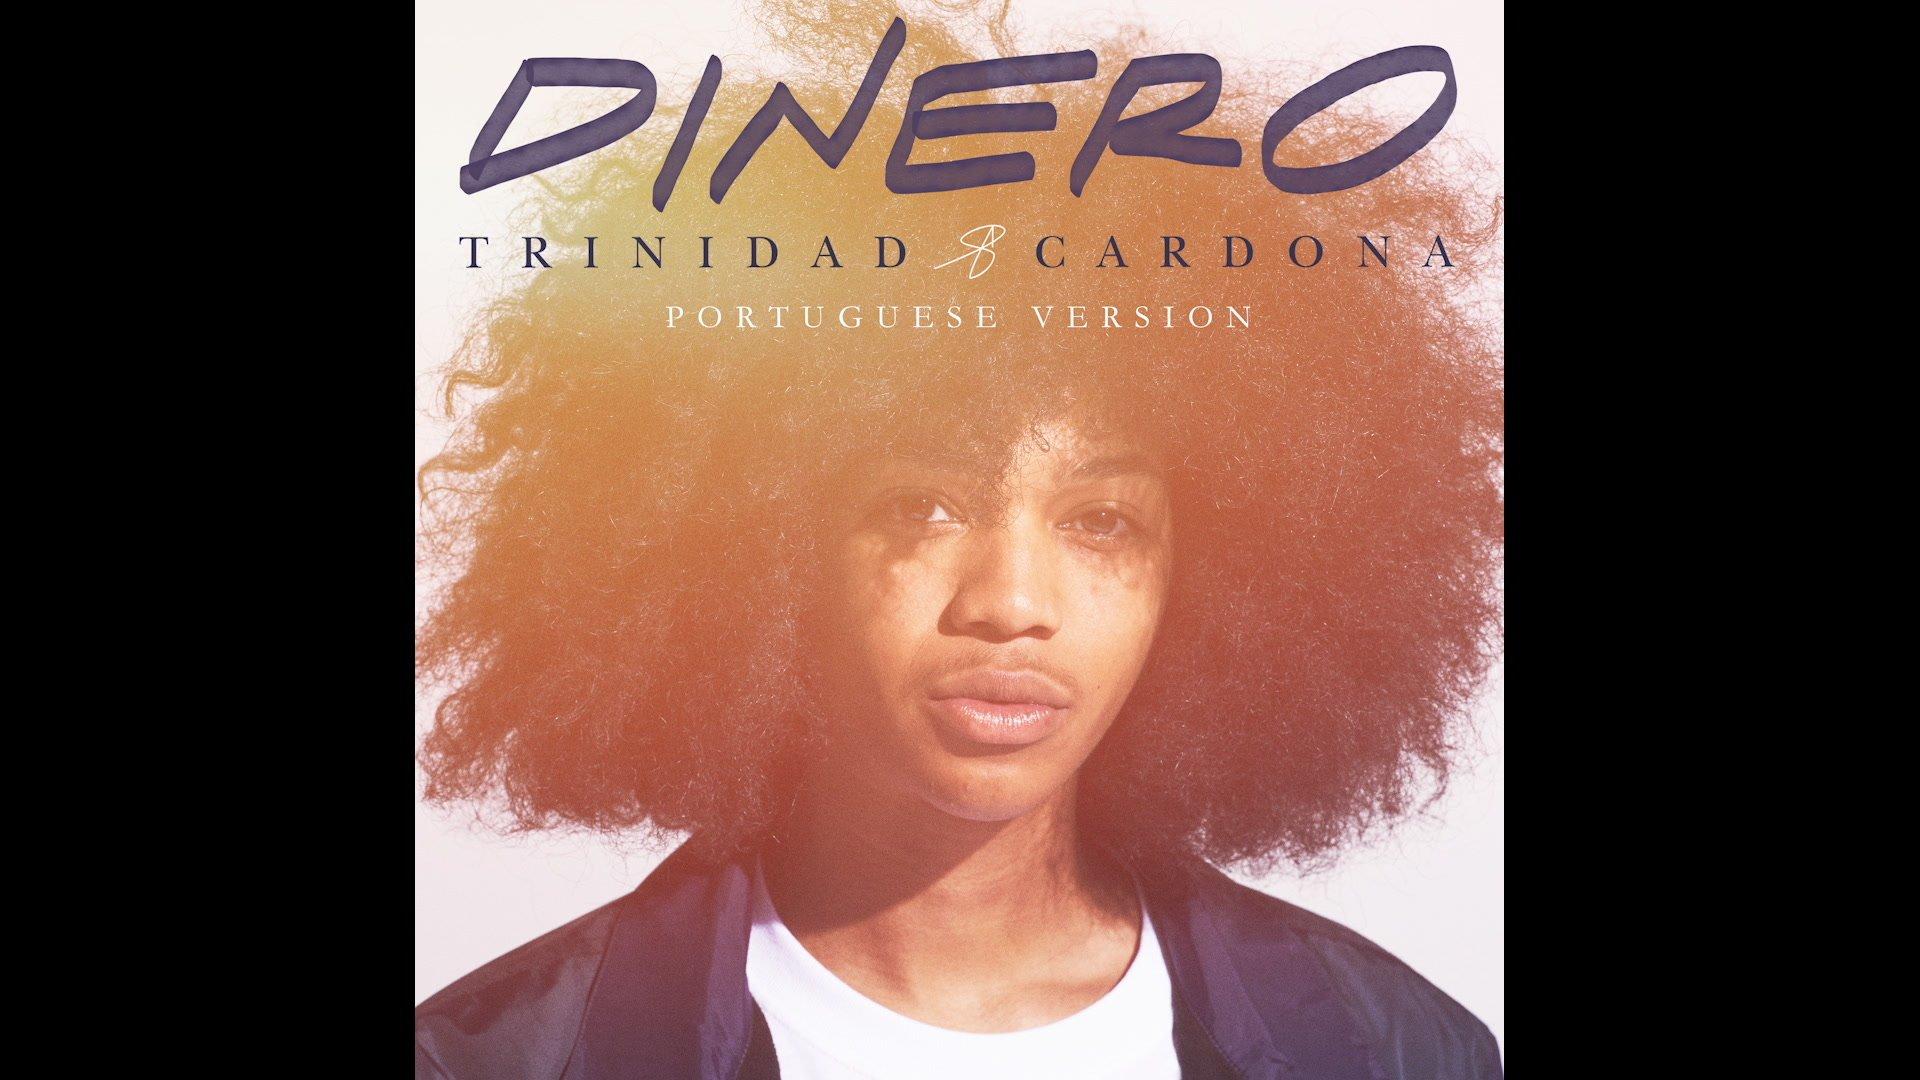 Dinero (Portuguese Version / Audio) Trinidad Cardona Ad:00 Play